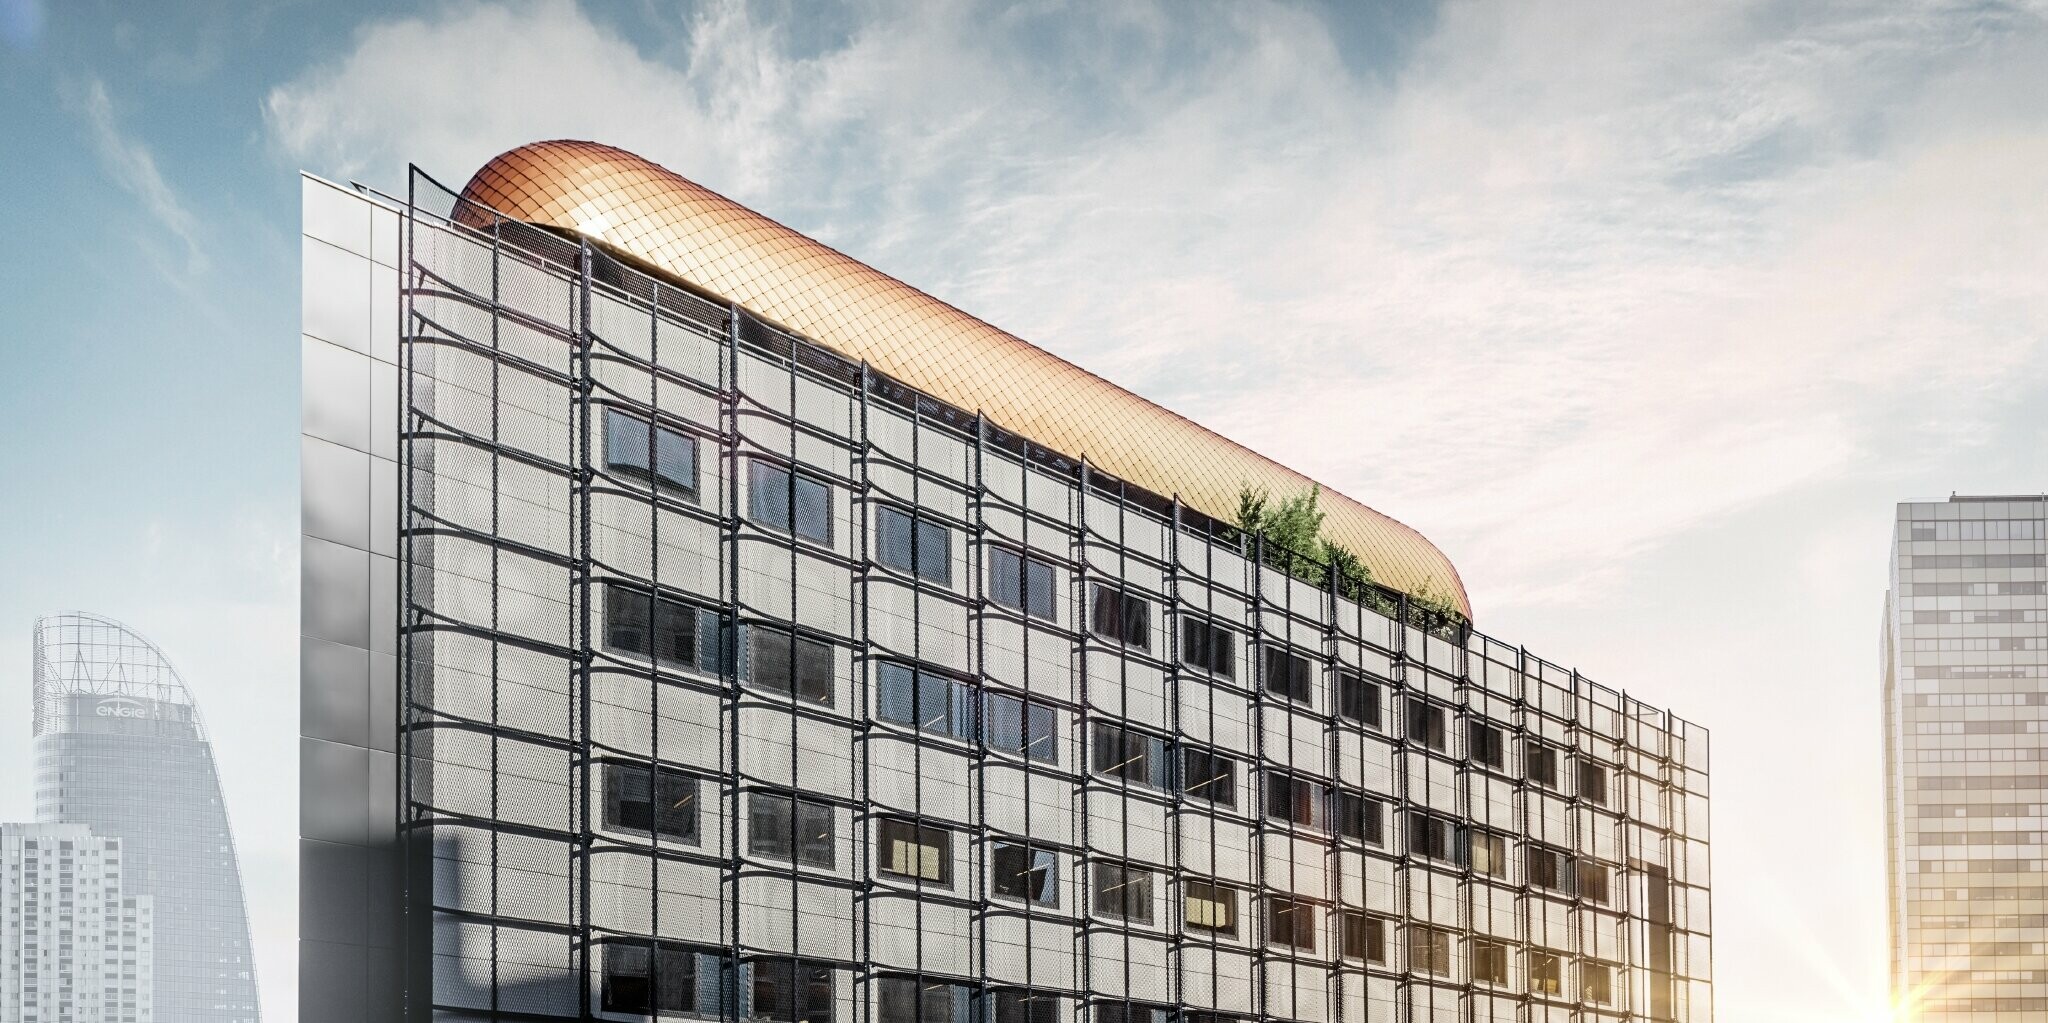 Bürogebäude Blackpearl in Paris mit einem neuen Aufbau verkleidet mit der kupferfarbenen PREFA Dachraute 29 × 29